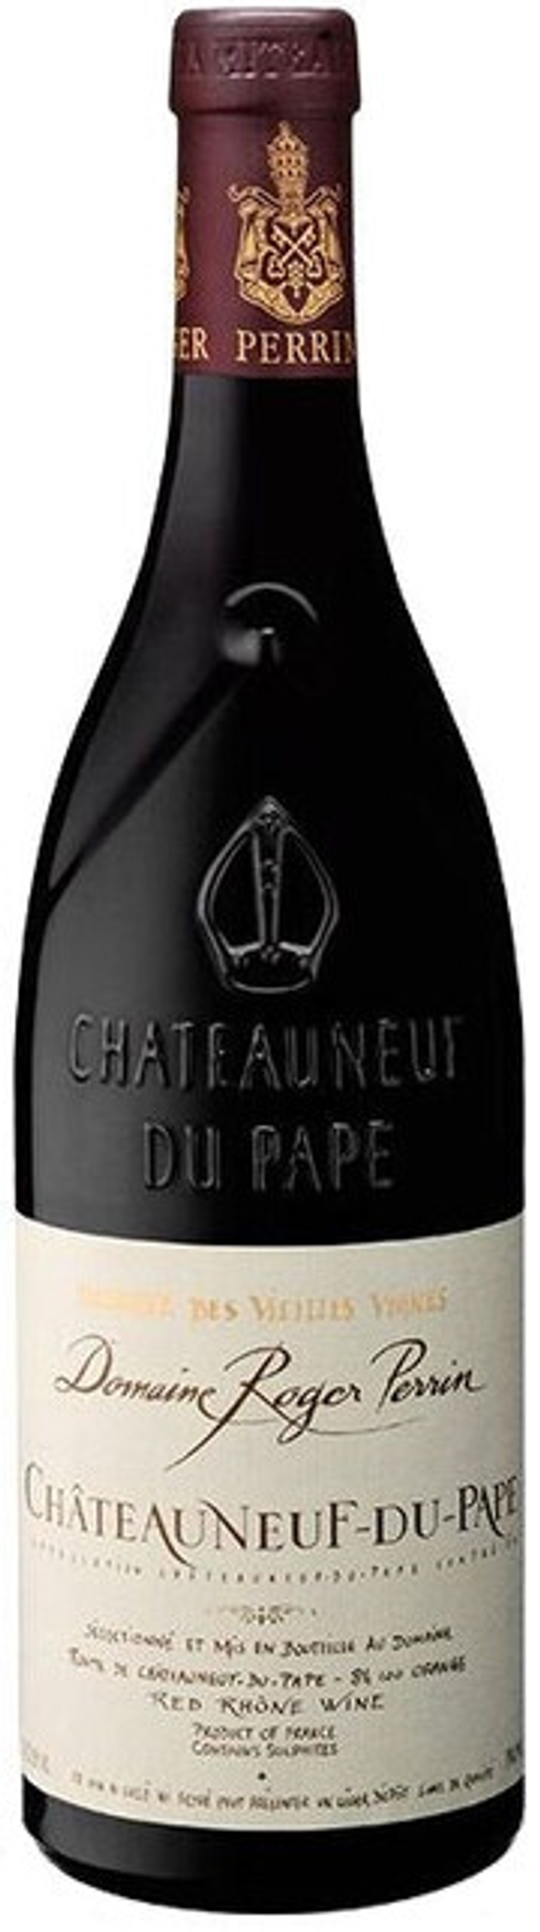 Вино Domaine Roger Perrin Chateauneuf-du-Pape Reserve des Vieilles Vignes AOC, 0,75 л.